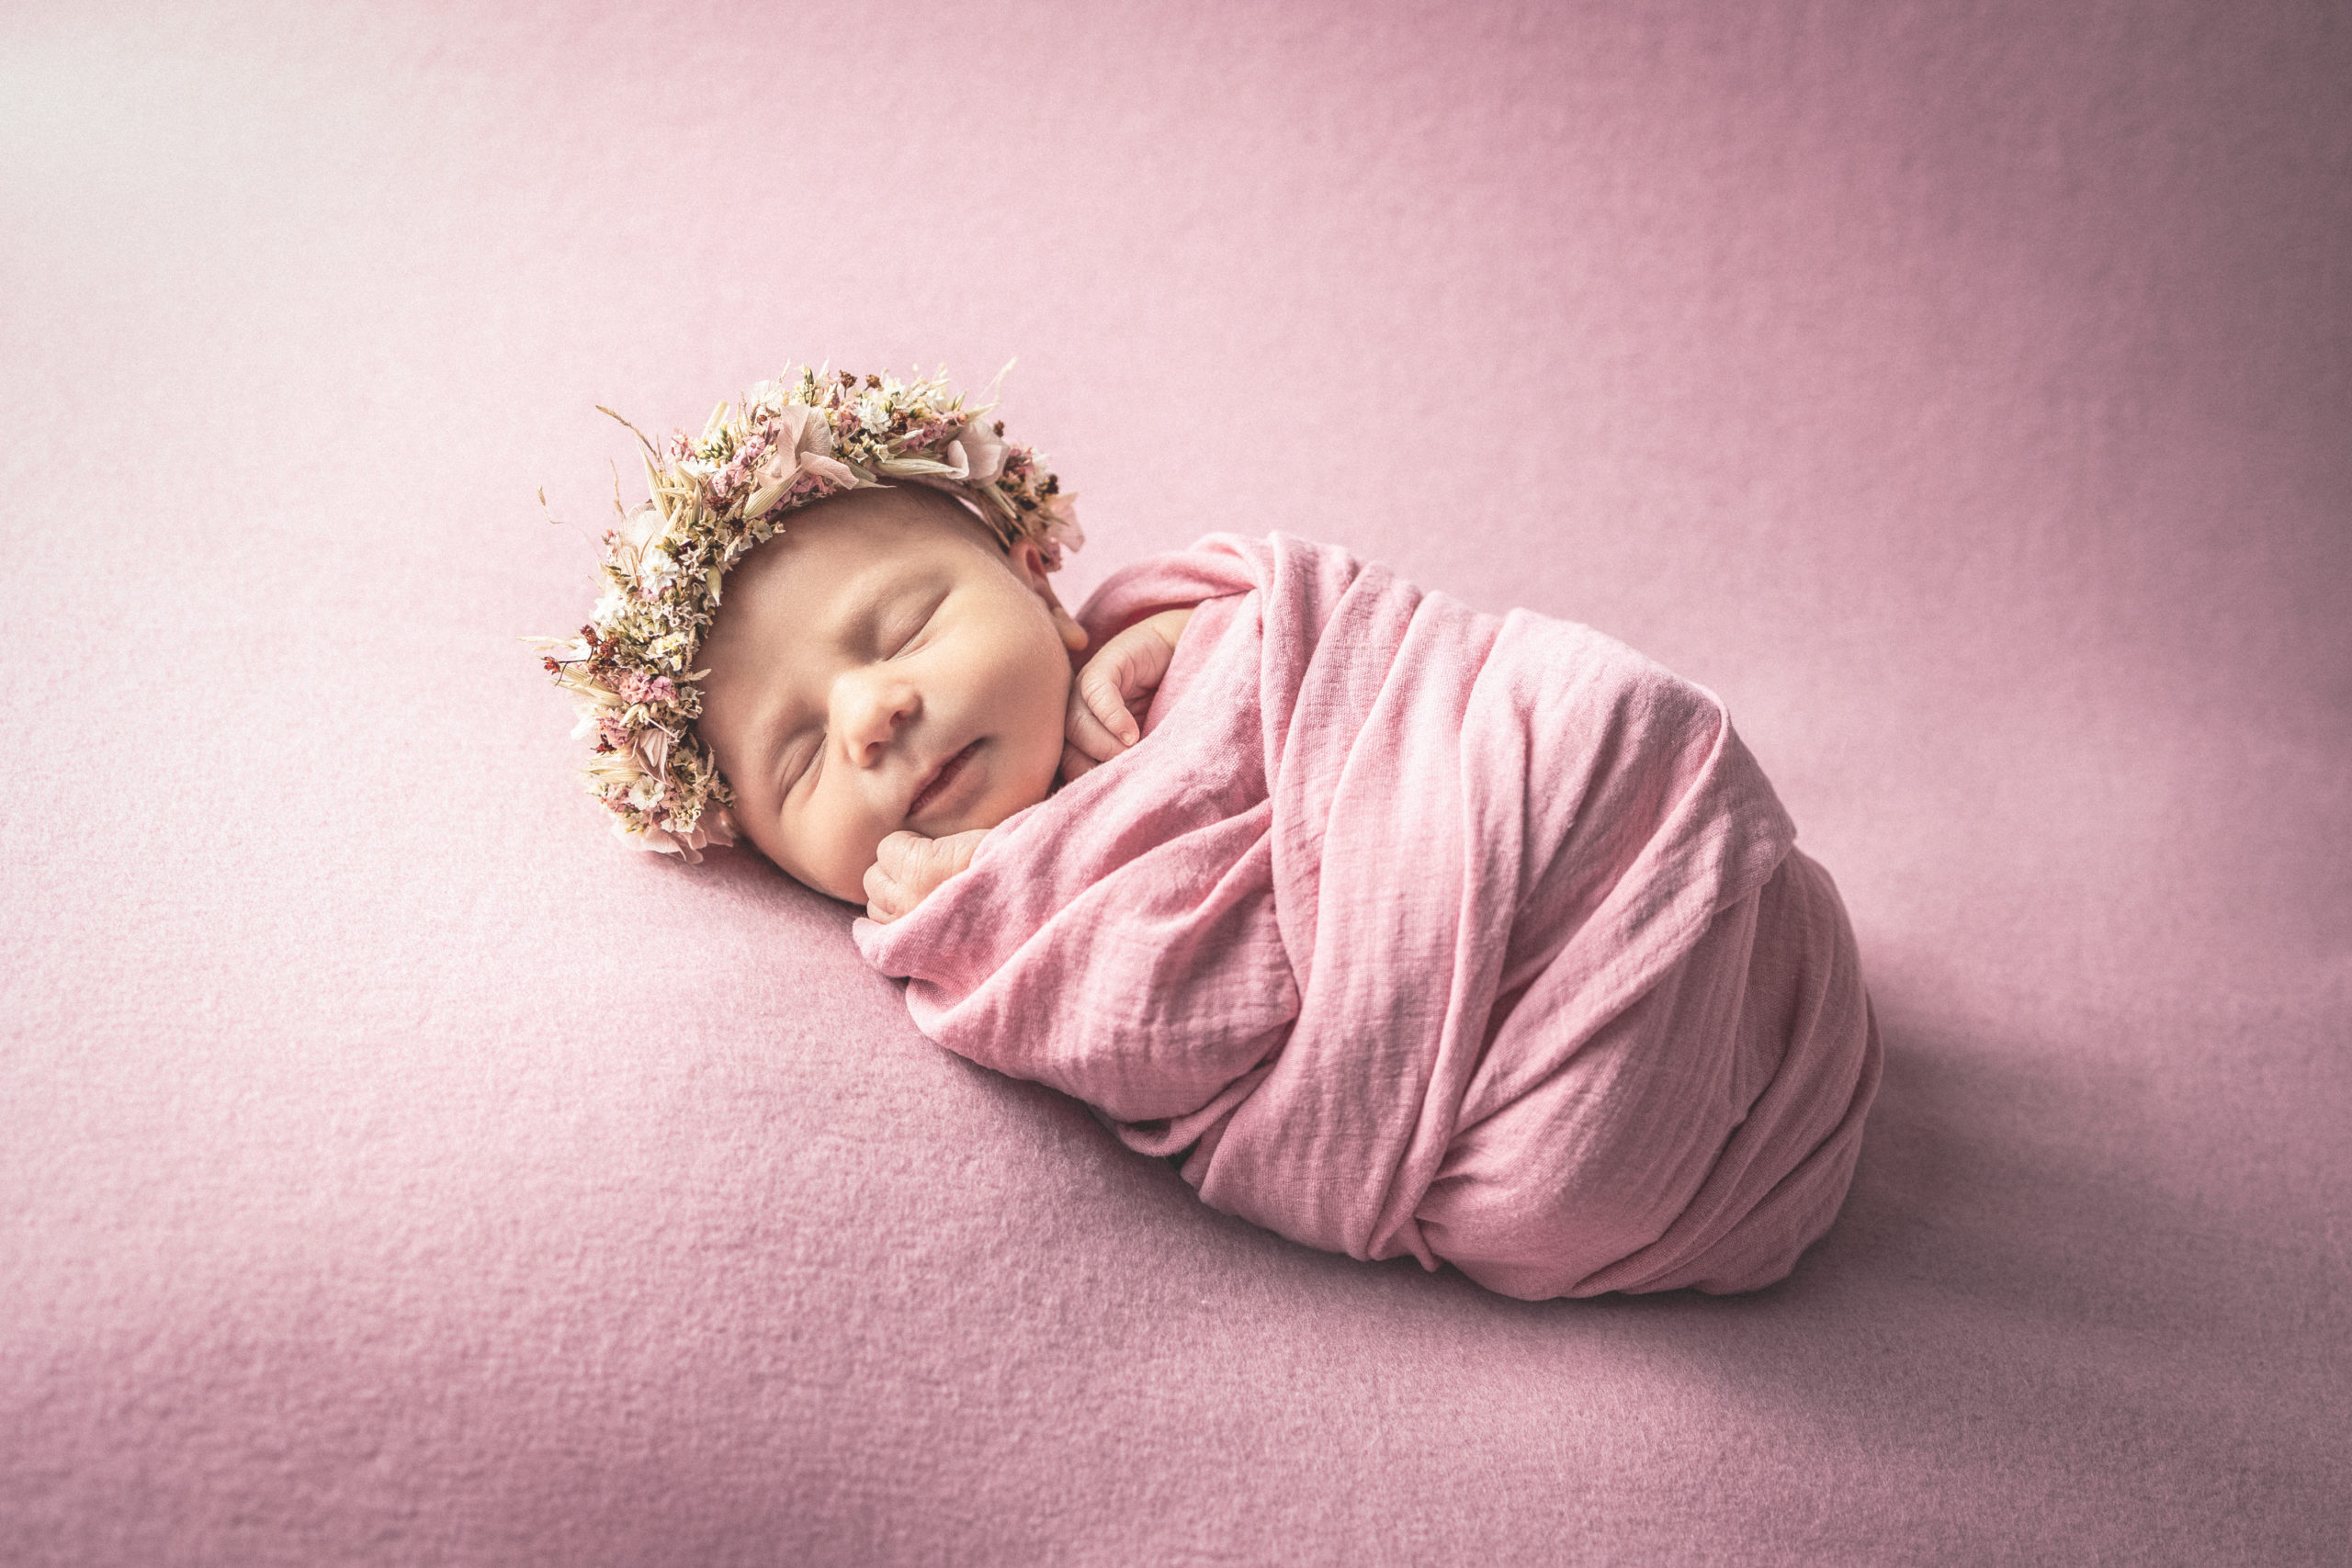 newbornfotografie | neugeborenenfotograf luedenscheid | fotostudio luedenscheid | babyfotograf luedenscheid | jessica joyce fotografie